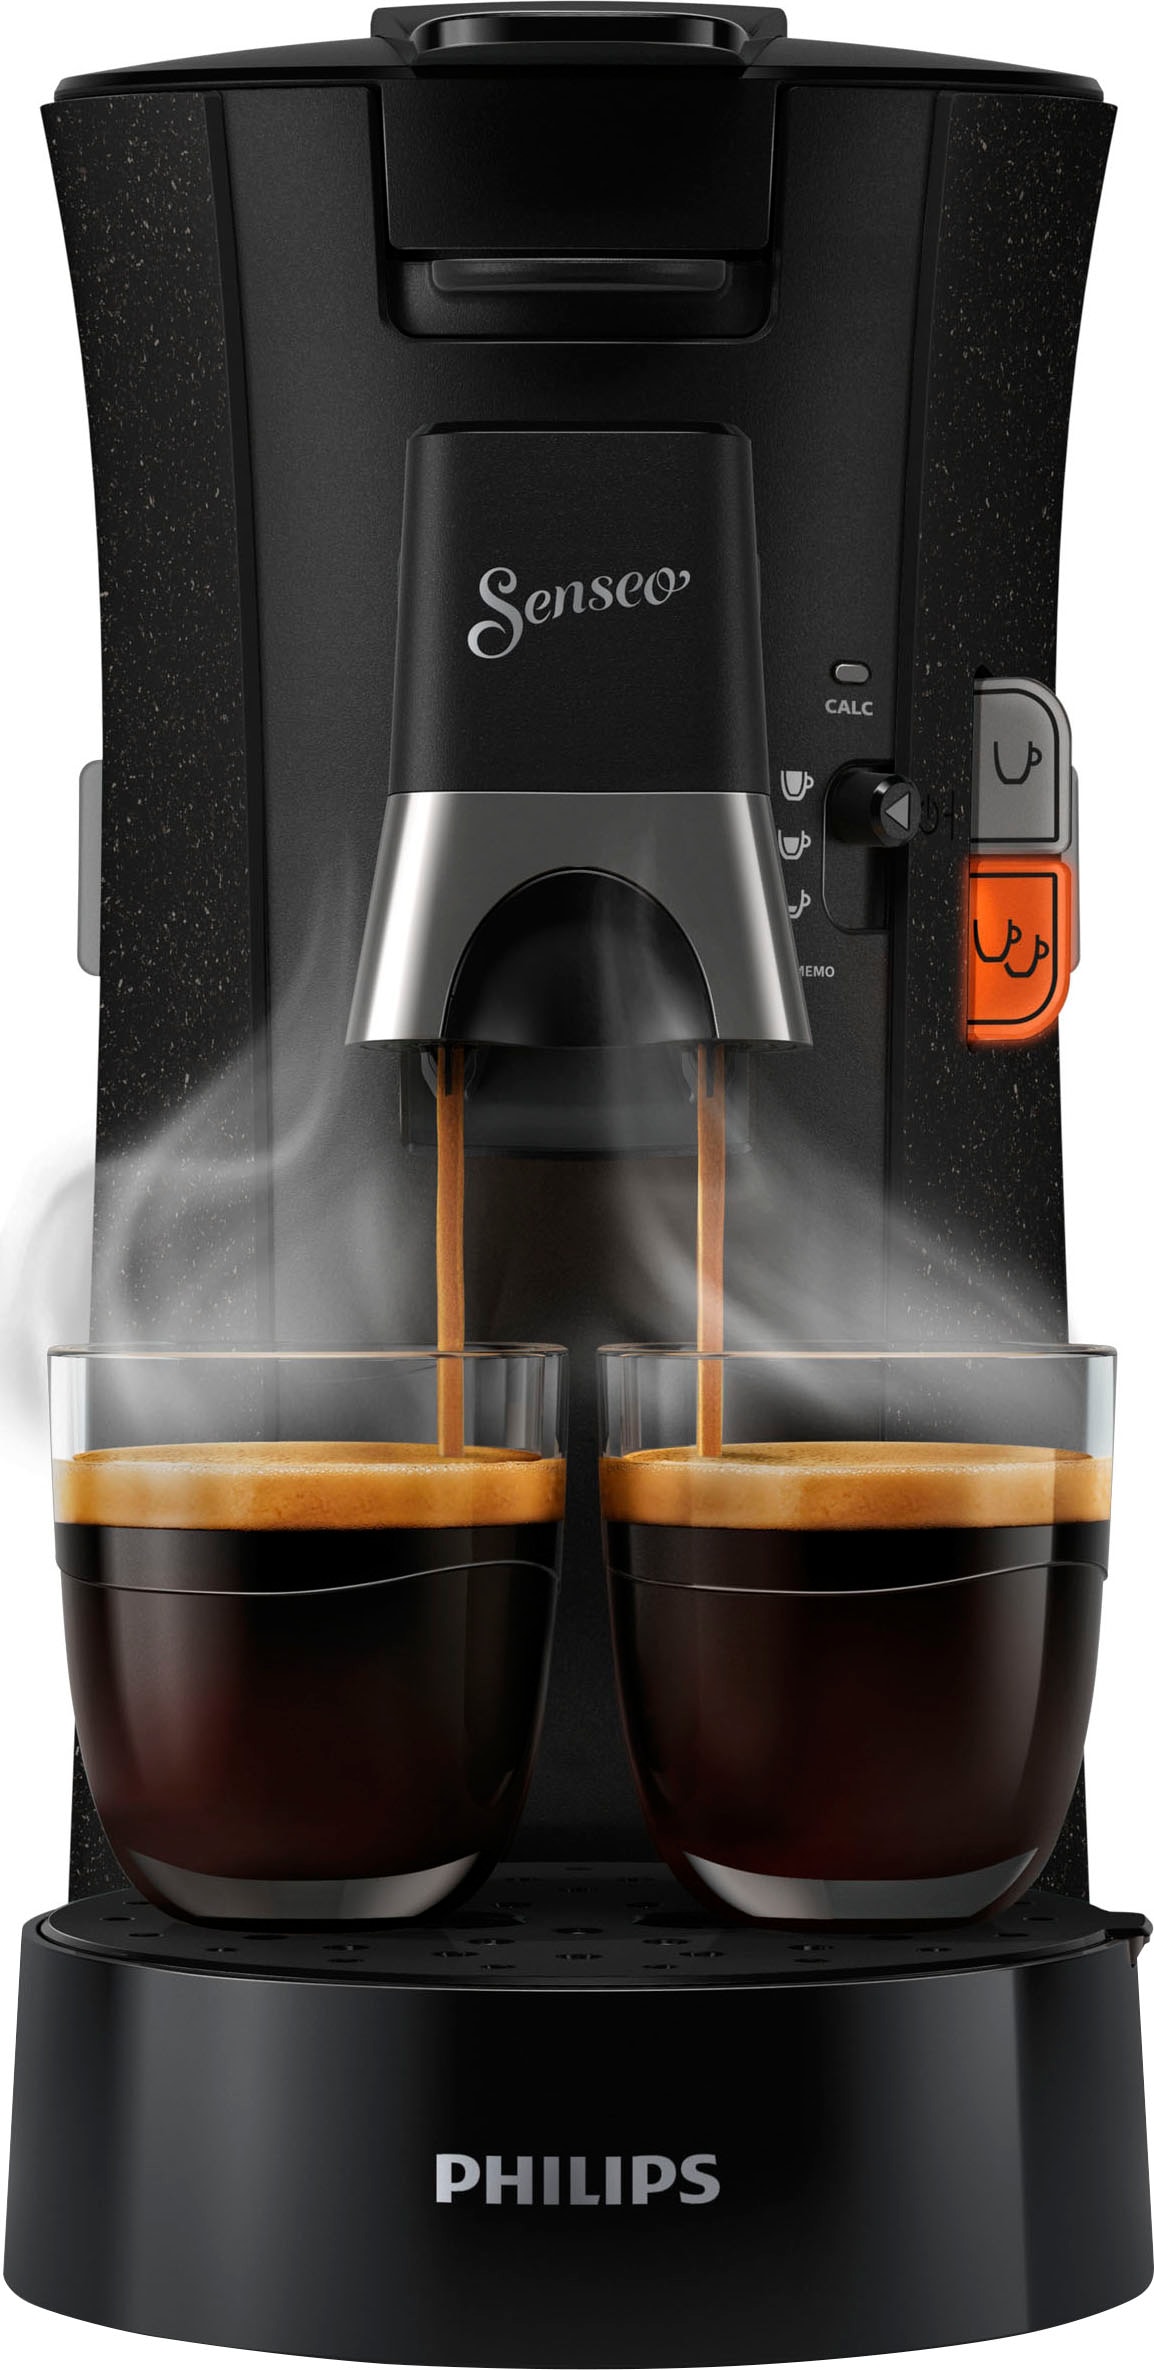 Garantie XXL »Select UVP, von schwarz Senseo Wert € ECO im inkl. Kaffeepadmaschine Gratis-Zugaben Jahren 14 3 - Philips mit CSA240/20«,